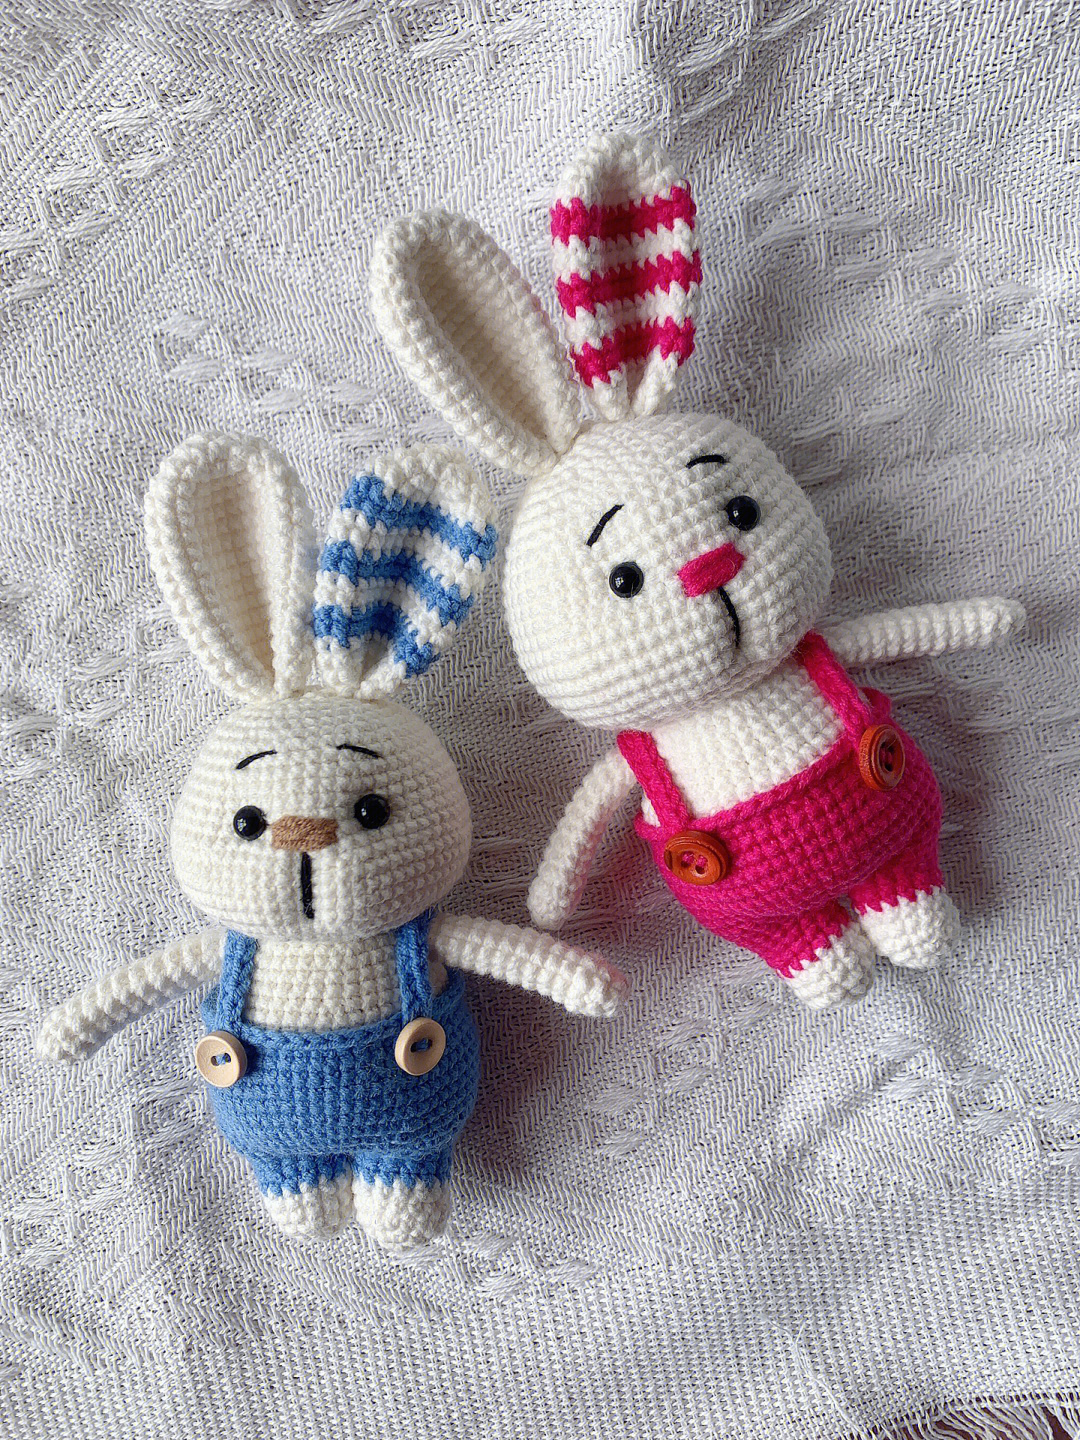 小兔子双色线针织法图片